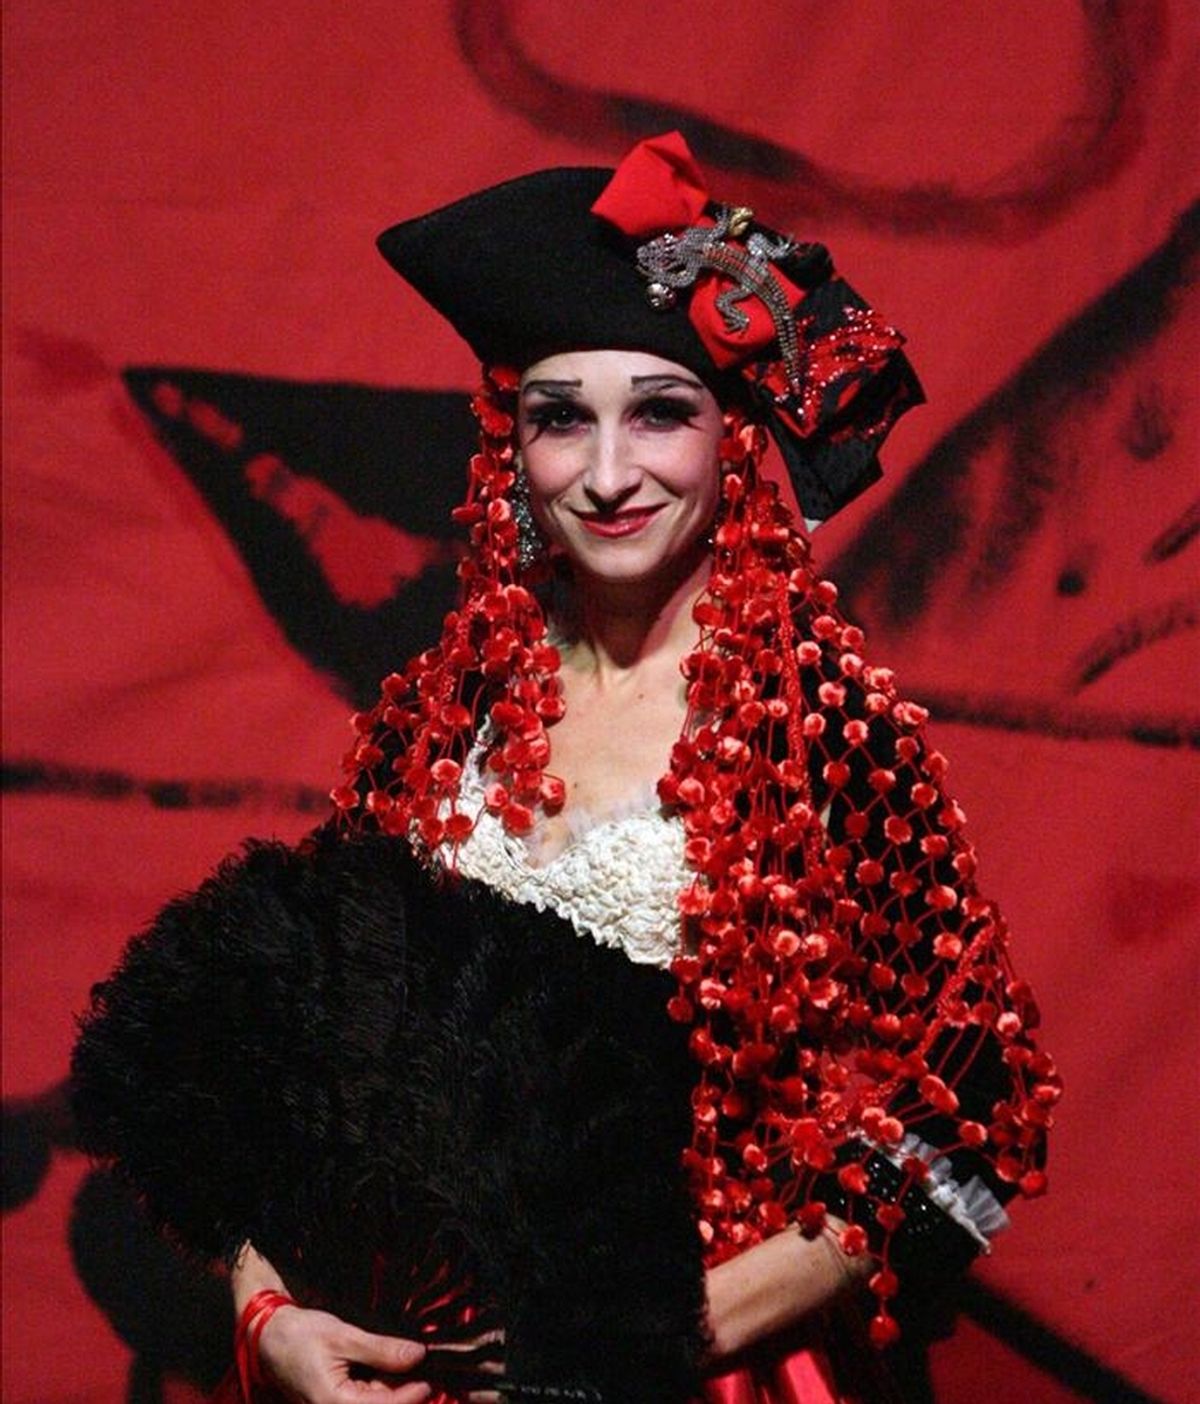 En la imagen, la actriz y soprano Nene interpretó el papel de la tonadillera y cupletista Raquel Meller en la obra "Por los ojos de Raquel Meller" en 2006 en Madrid. EFE/Archivo